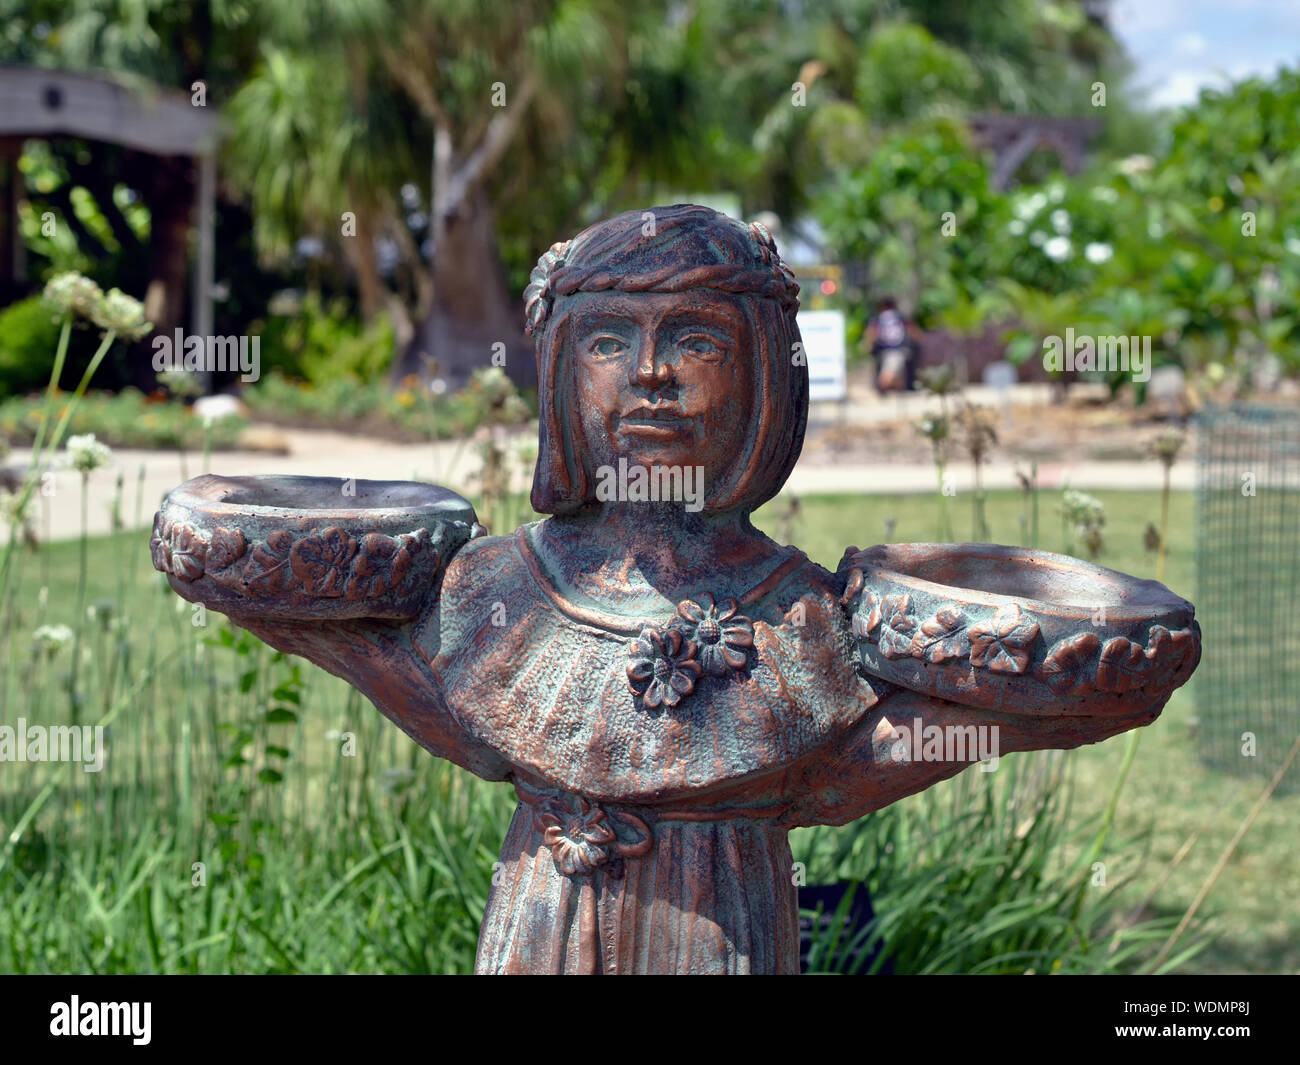 Bronzestatue mit grüner Patina der Jungfrau Holding eine Schüssel in jeder Hand. South Texas Botanical Gardens and Nature Center. Corpus Christi, Texas USA. Stockfoto